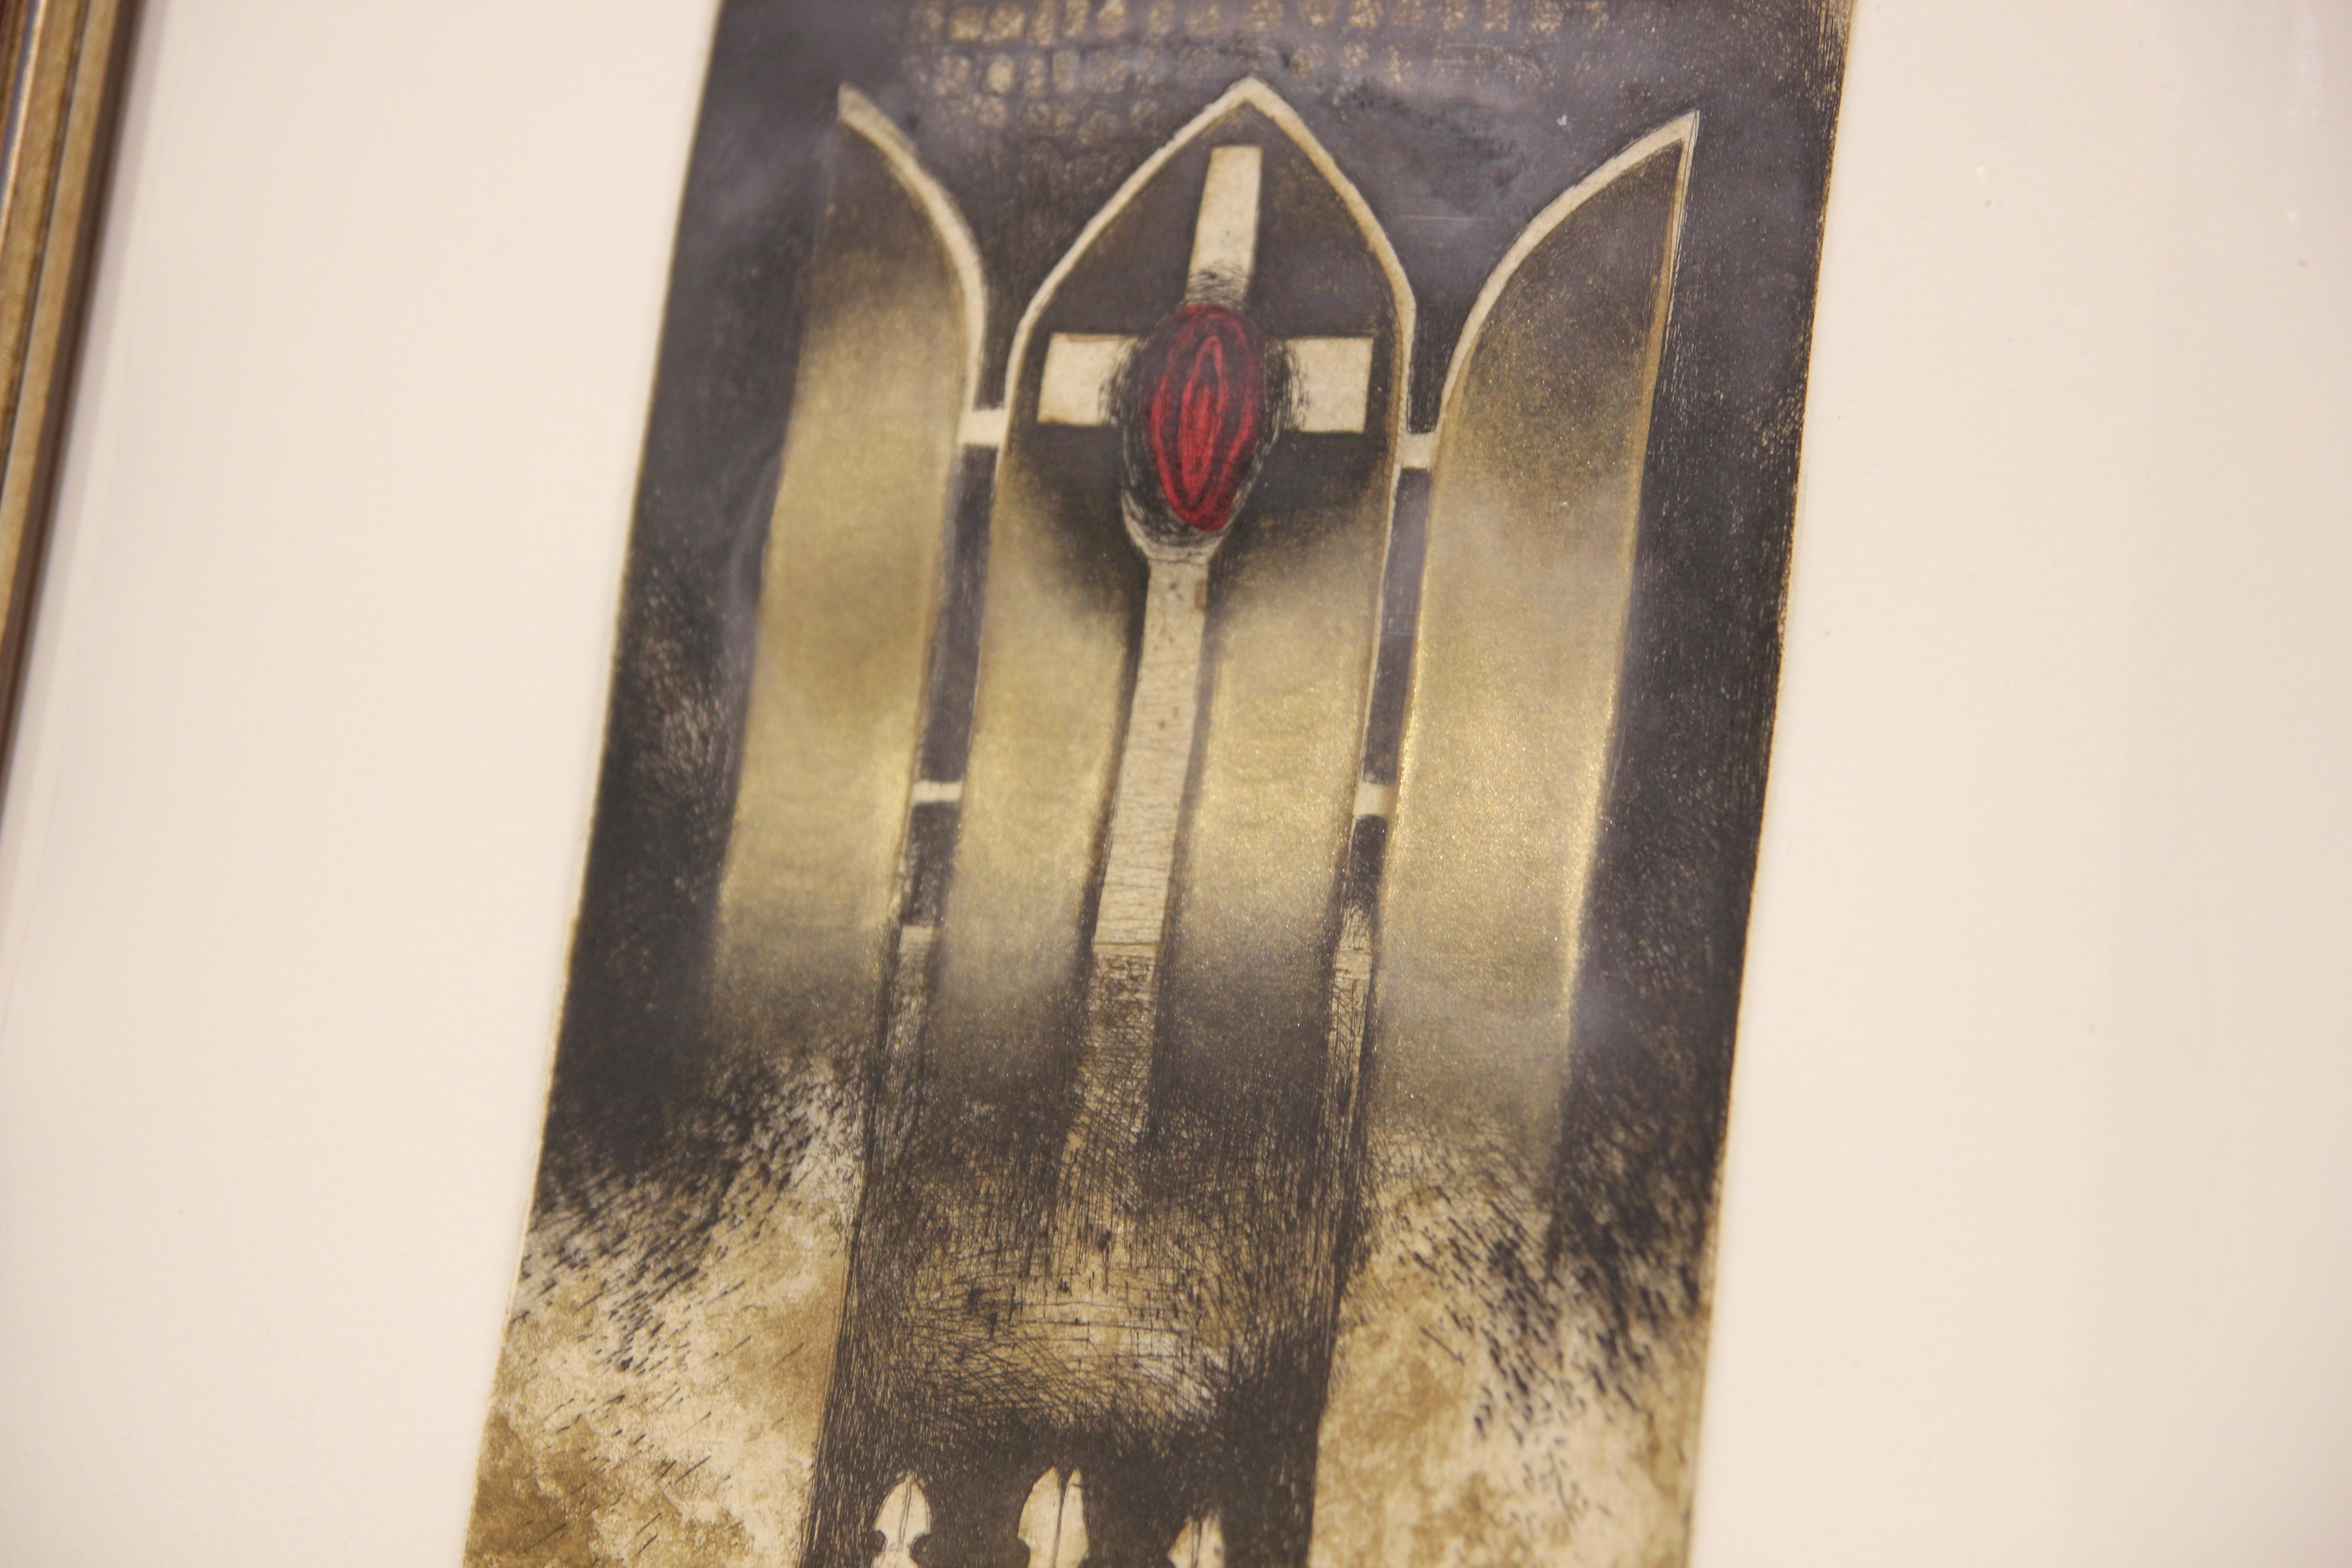 Centre Cross Abstrakte schwarze, rote und metallische religiöse Radierung – Print von Sharon Kopriva